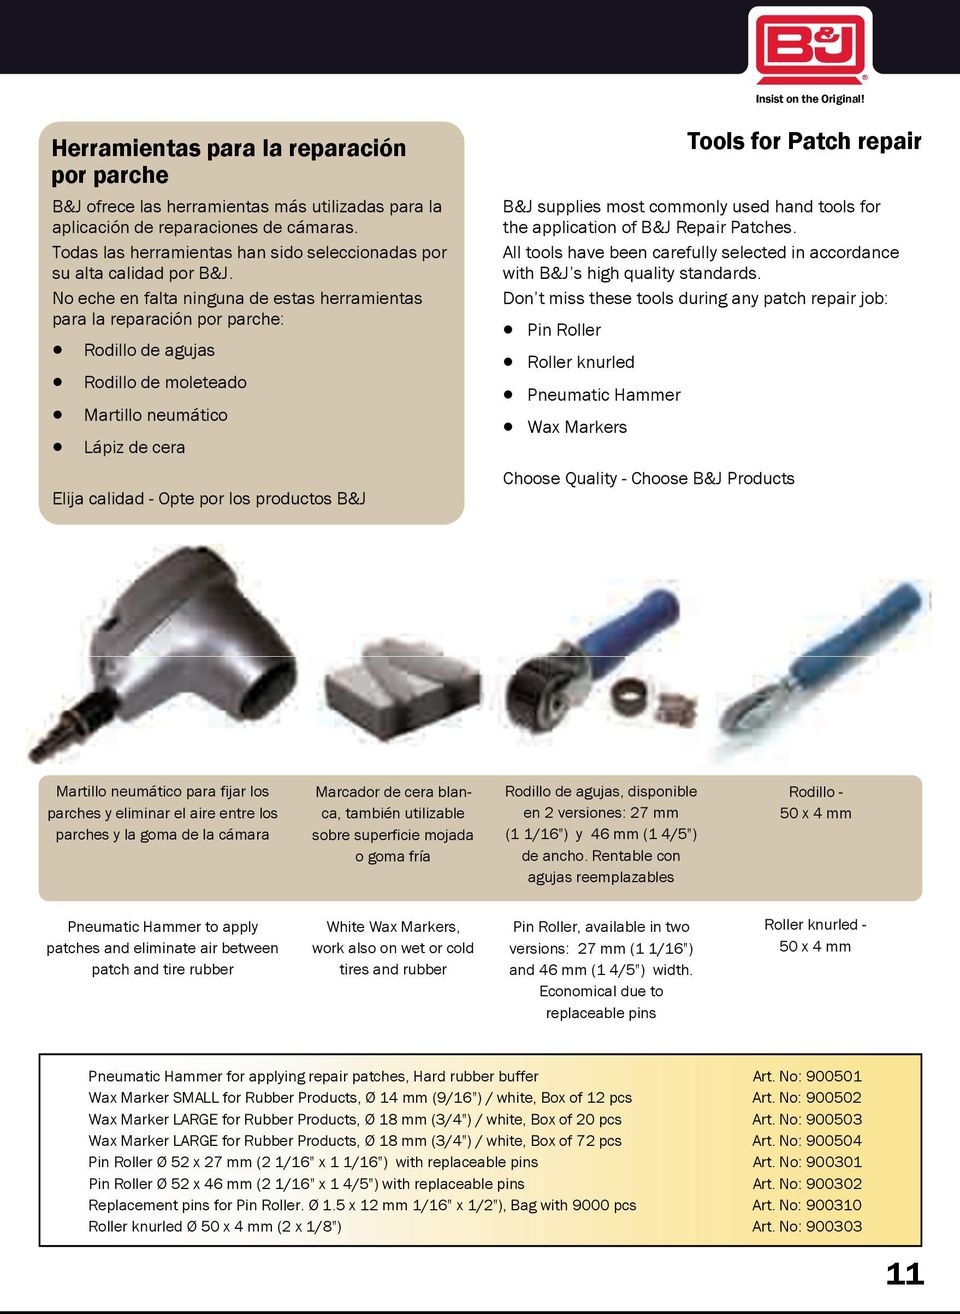 No eche en falta ninguna de estas herramientas para la reparación por parche: Rodillo de agujas Rodillo de moleteado Martillo neumático Lápiz de cera Elija calidad - Opte por los productos B&J Tools